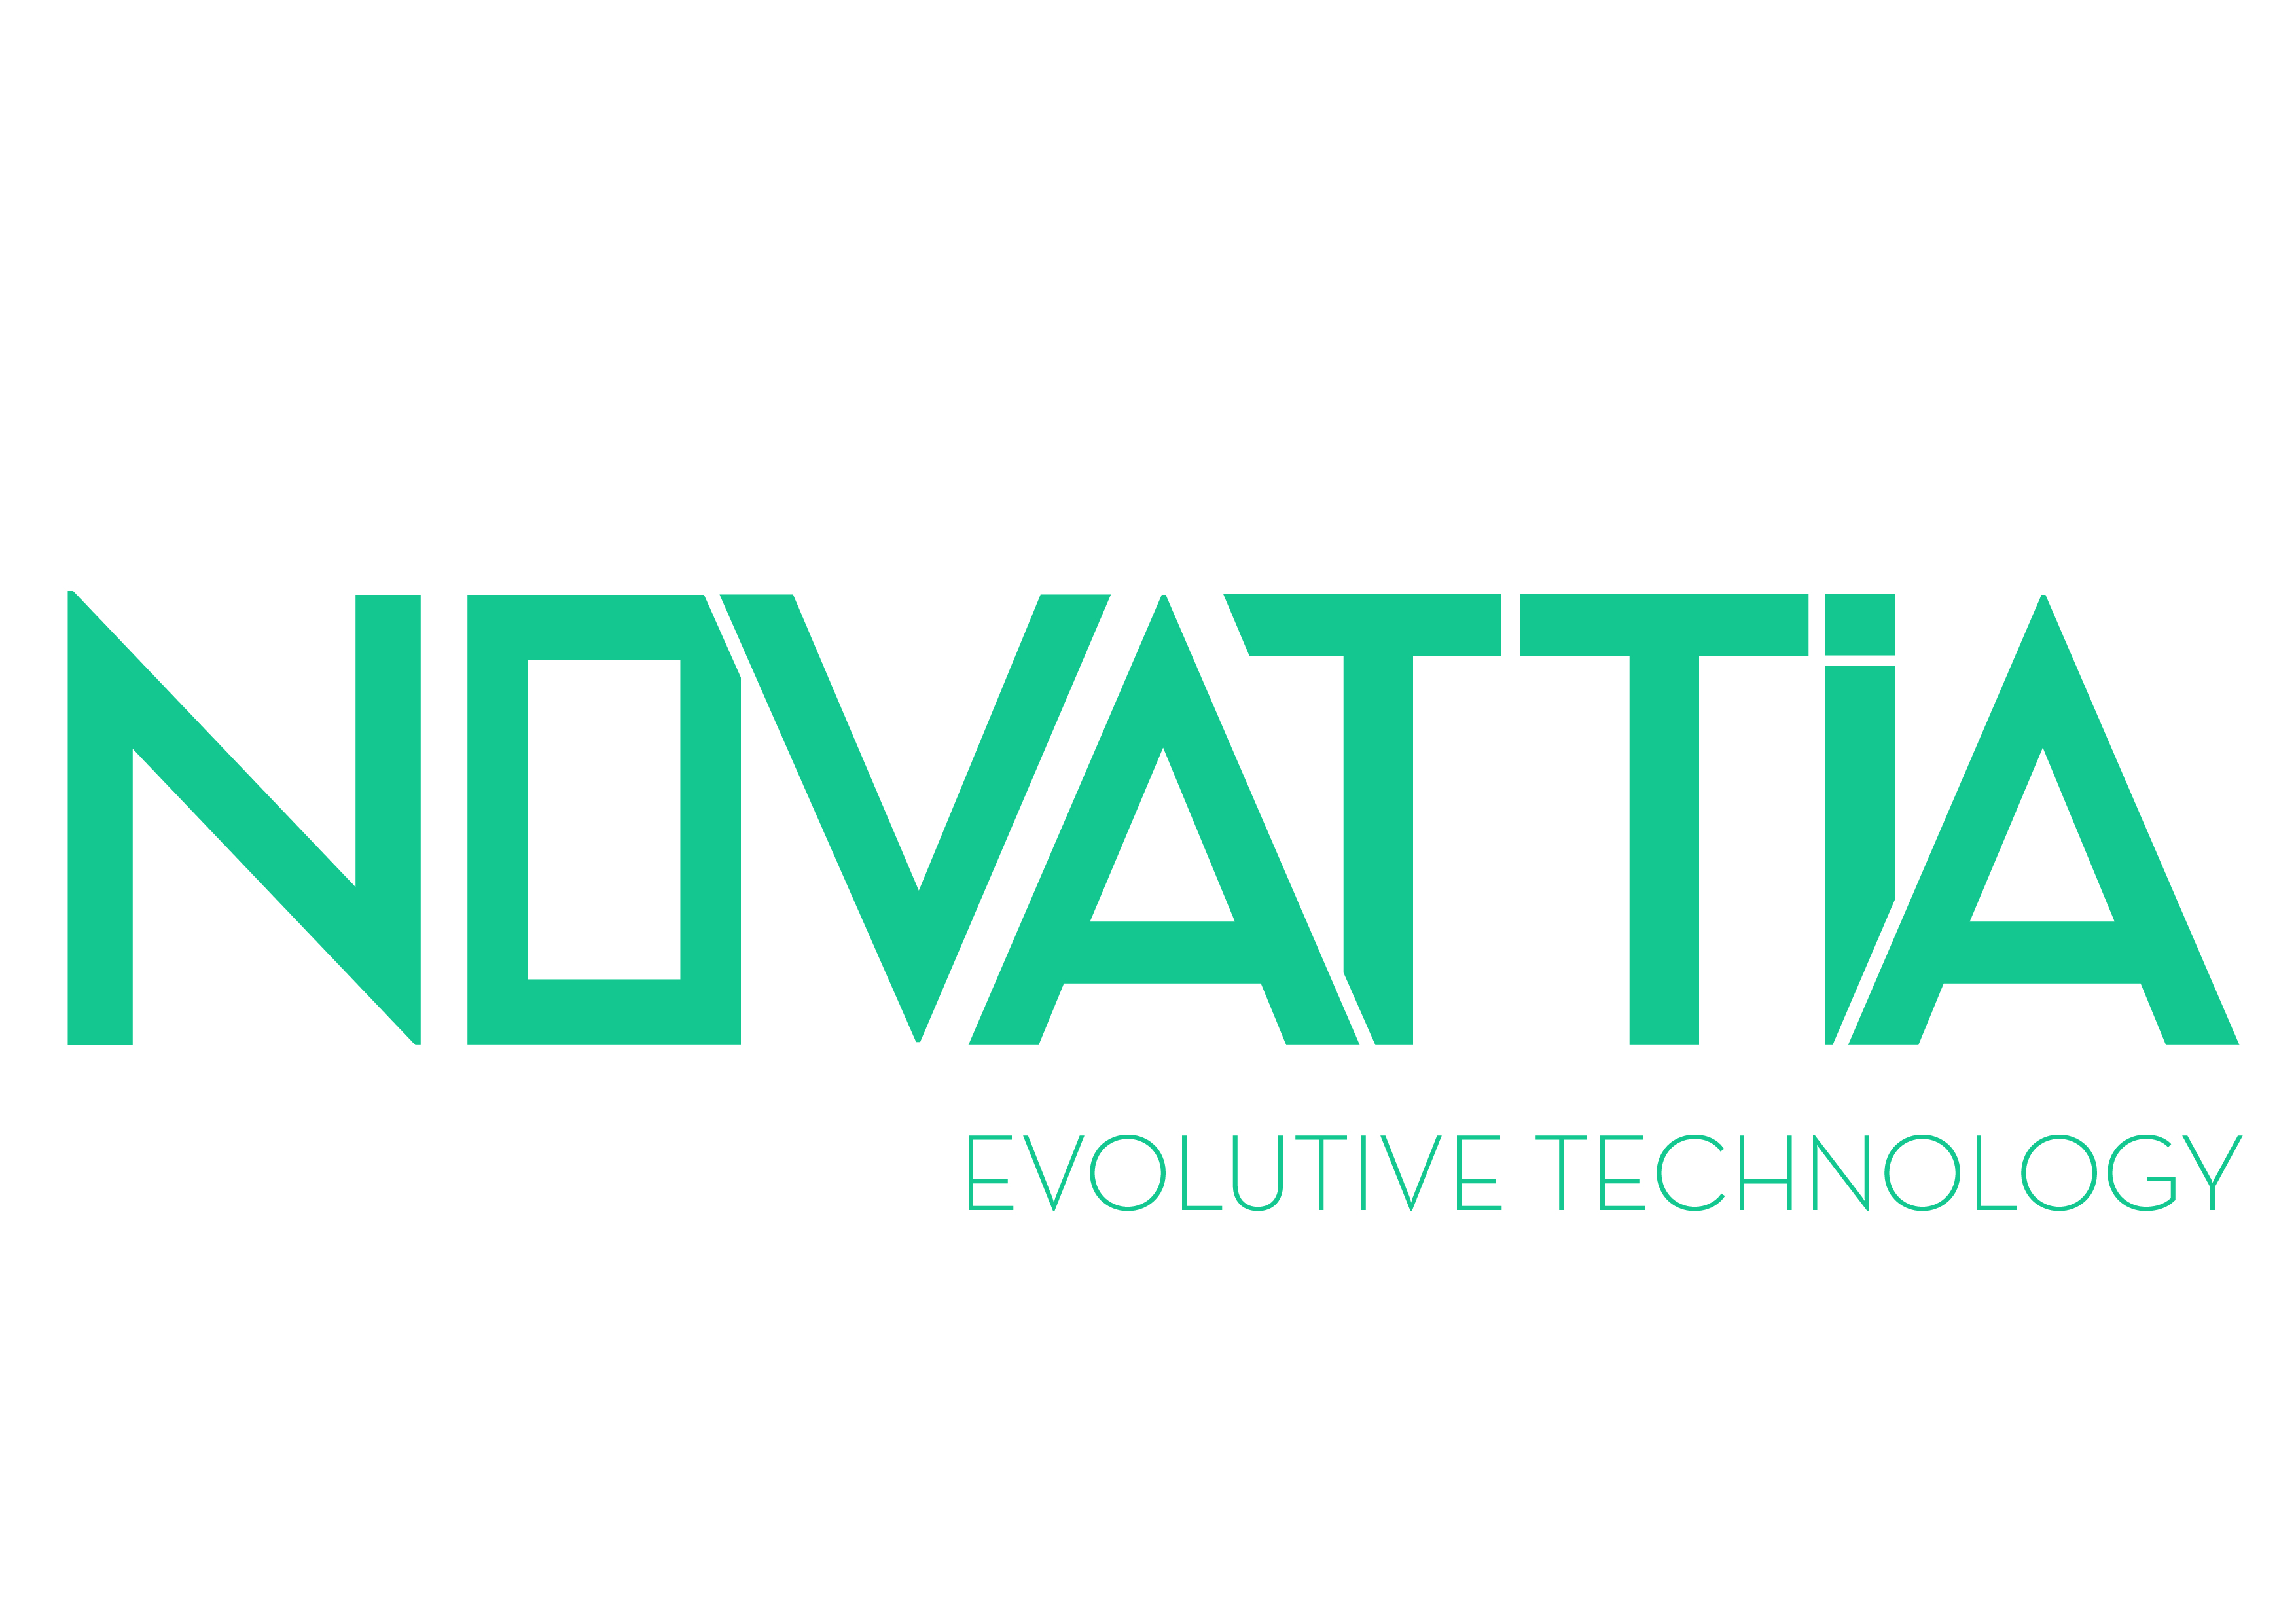 Acquisition of Novattia